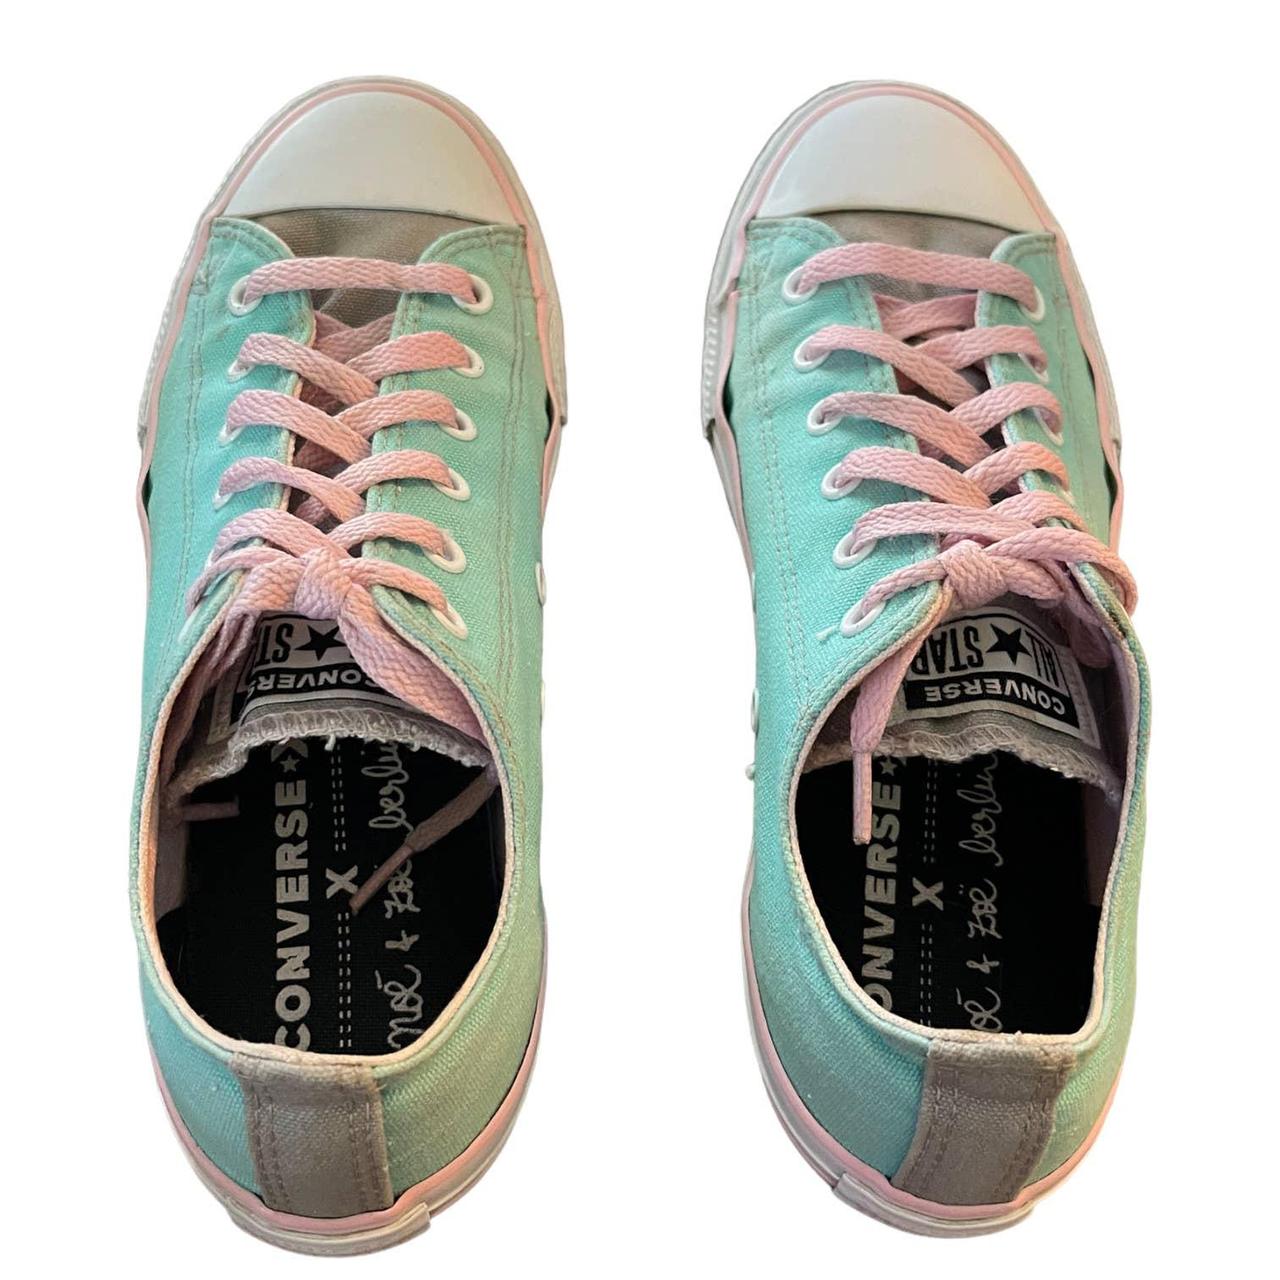 Caroline rapport Typisk Converse All Star Noe & Zoe Berlin Sneakers Size... - Depop